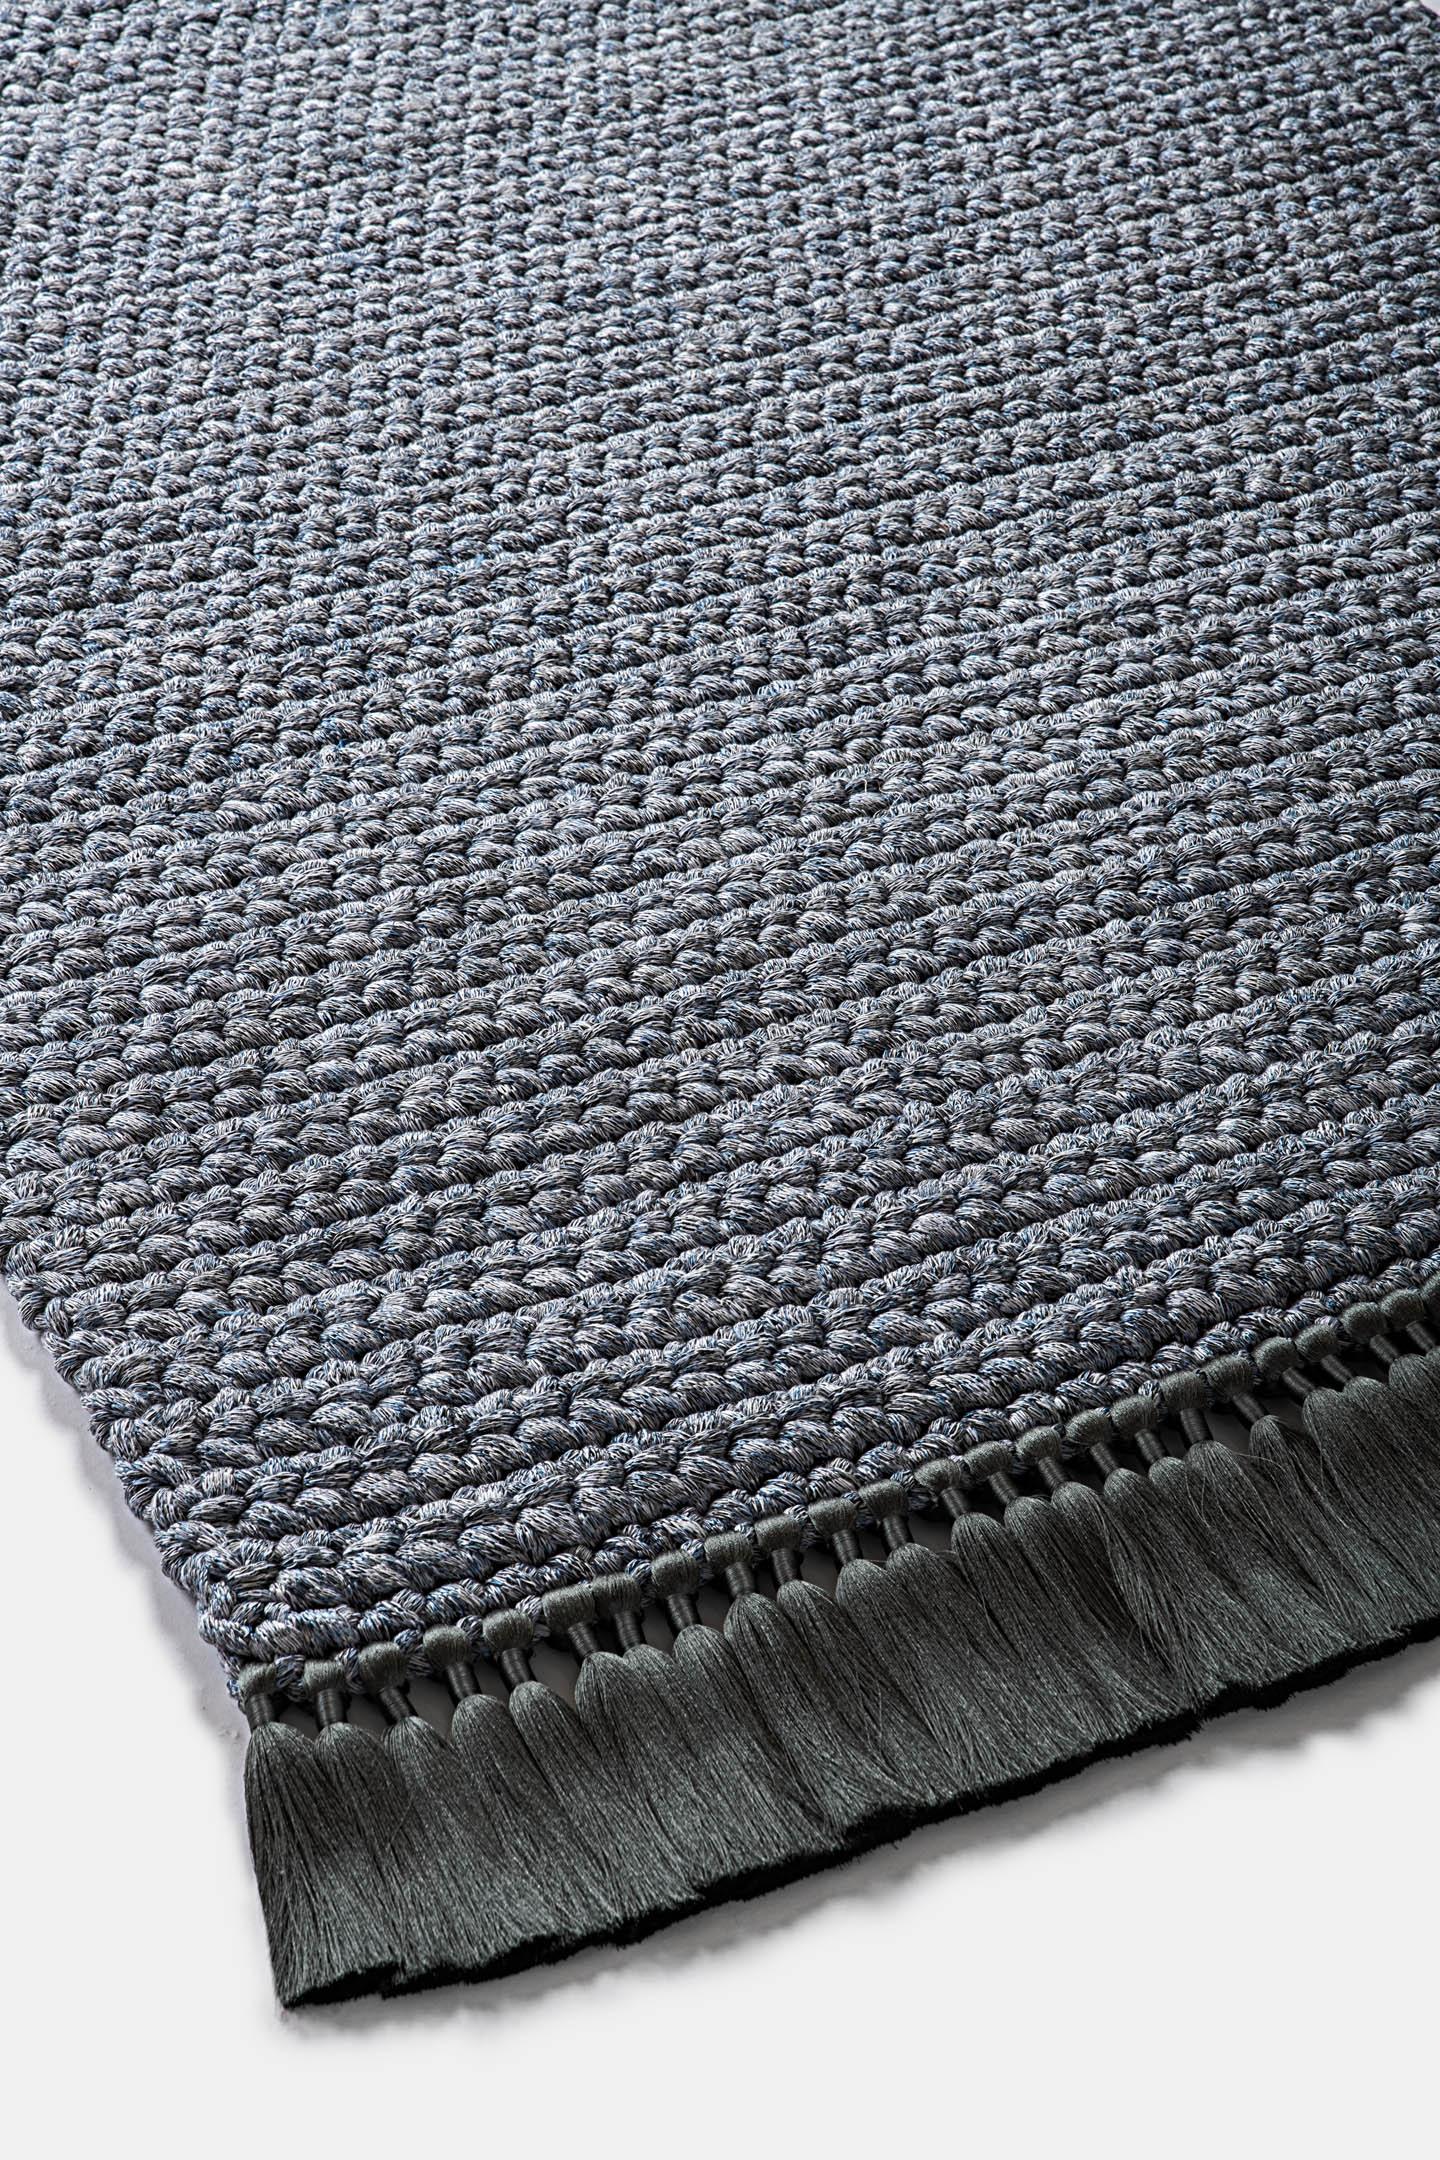 Handgefertigter gehäkelter dicker Teppich 120x200 cm in blau-grauen Farben mit grauen Quasten (Baumwolle) im Angebot